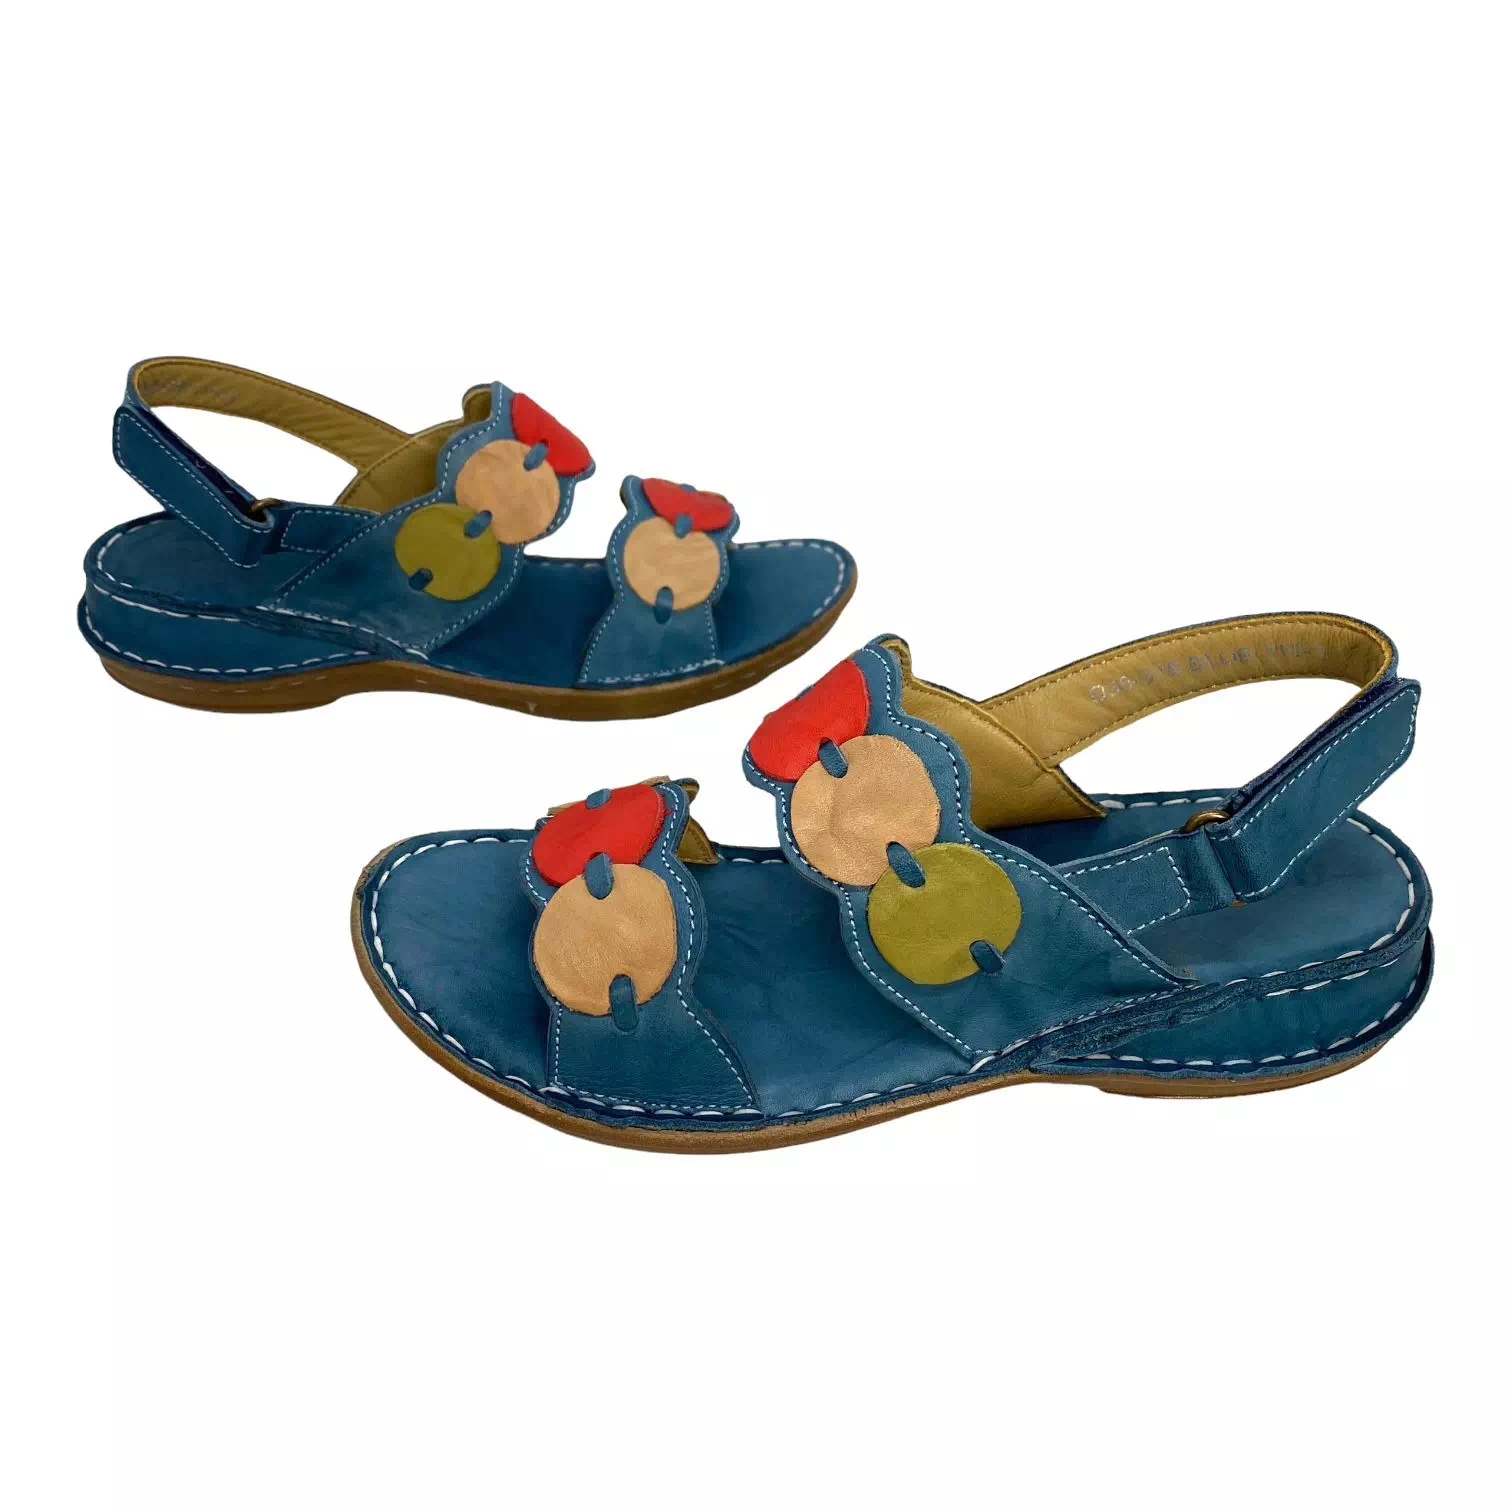 Sandale albastre cu accesorii colorate